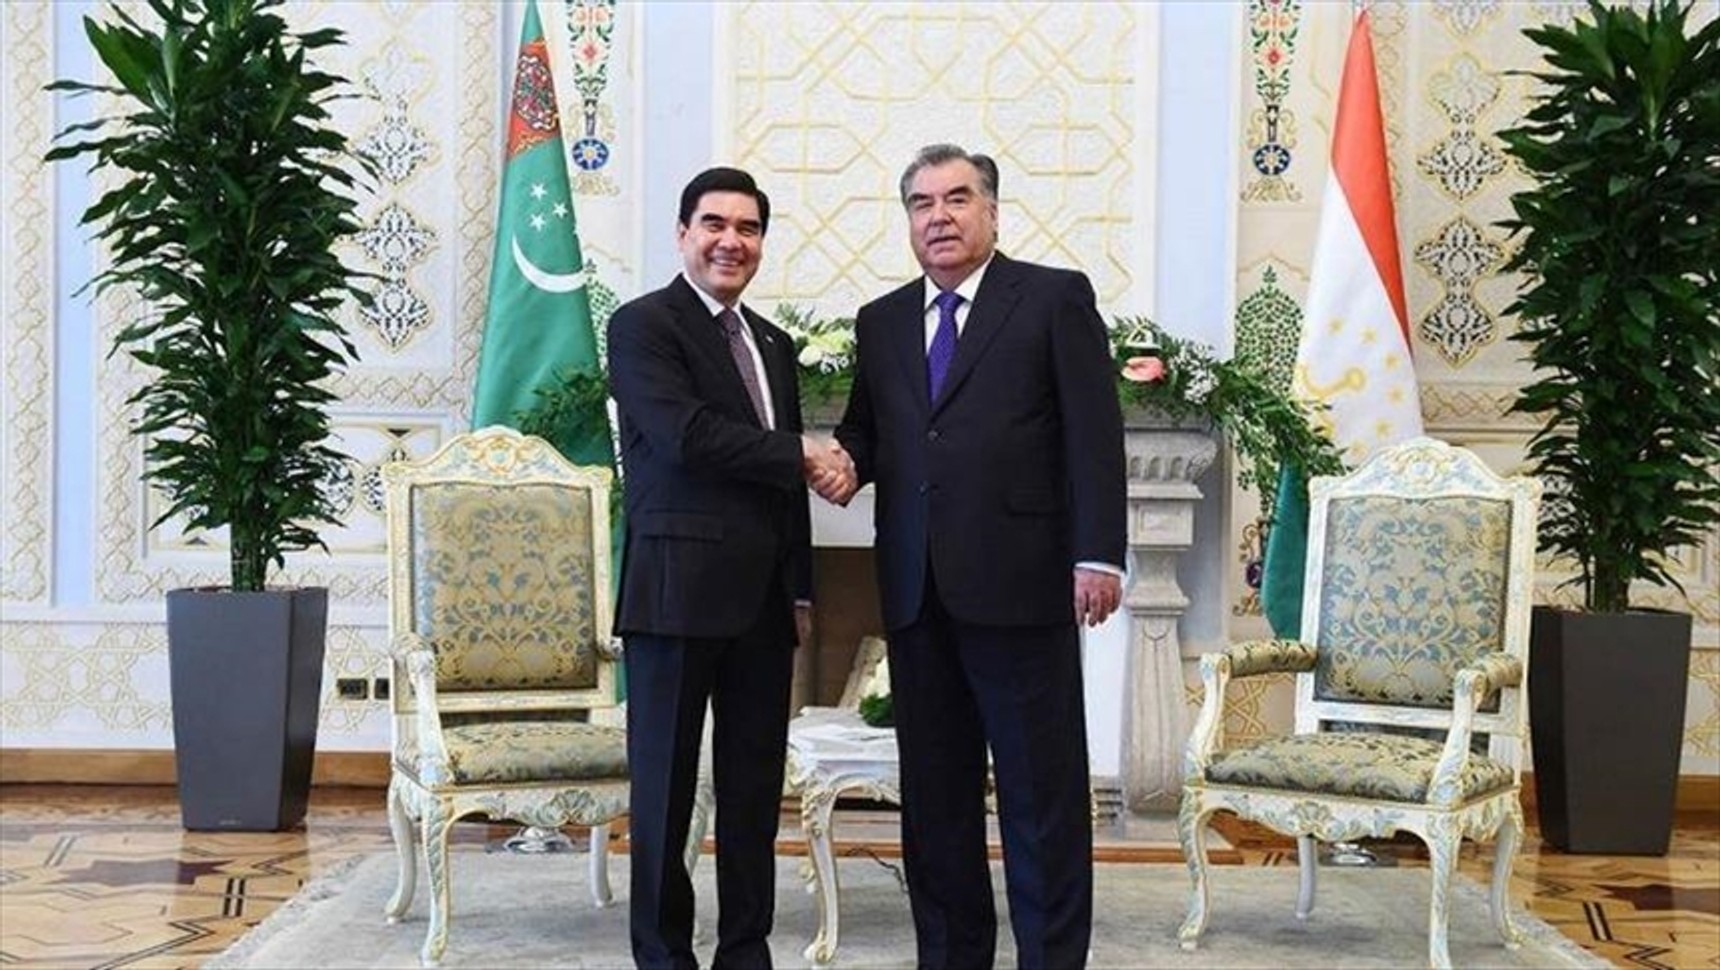 Таджикистан и Туркменистан воздержались от подписания договора о дружбе стран Центральной Азии